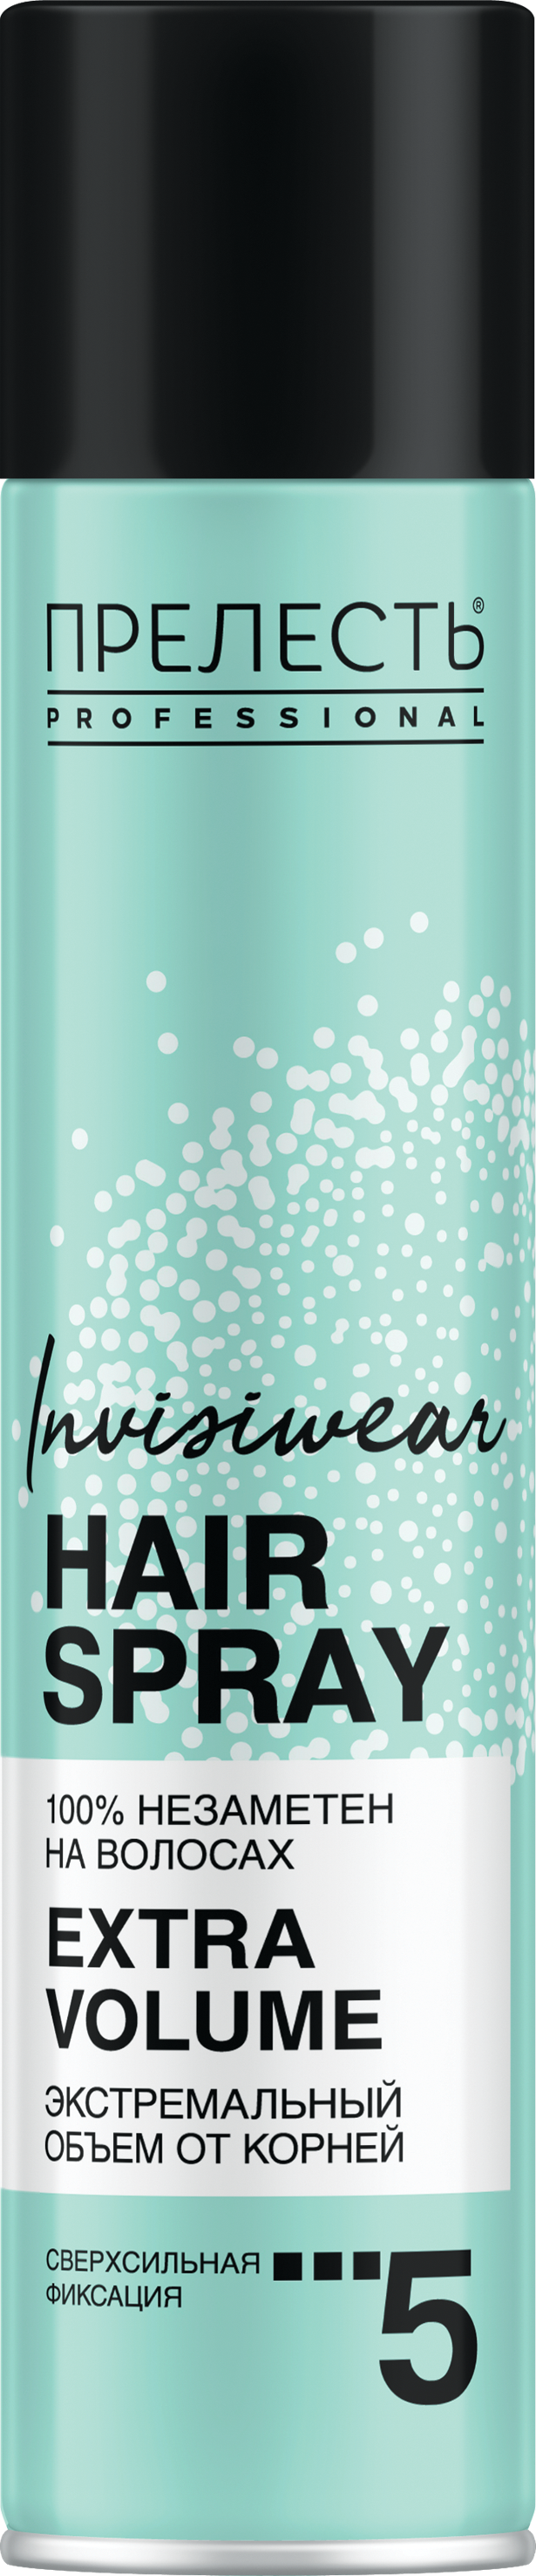 Лак для волос Прелесть Invisiwear Невесомый, экстремальный объем, 300 мл мусс пенка для волос прелесть invisiwear термозащитный 200 мл